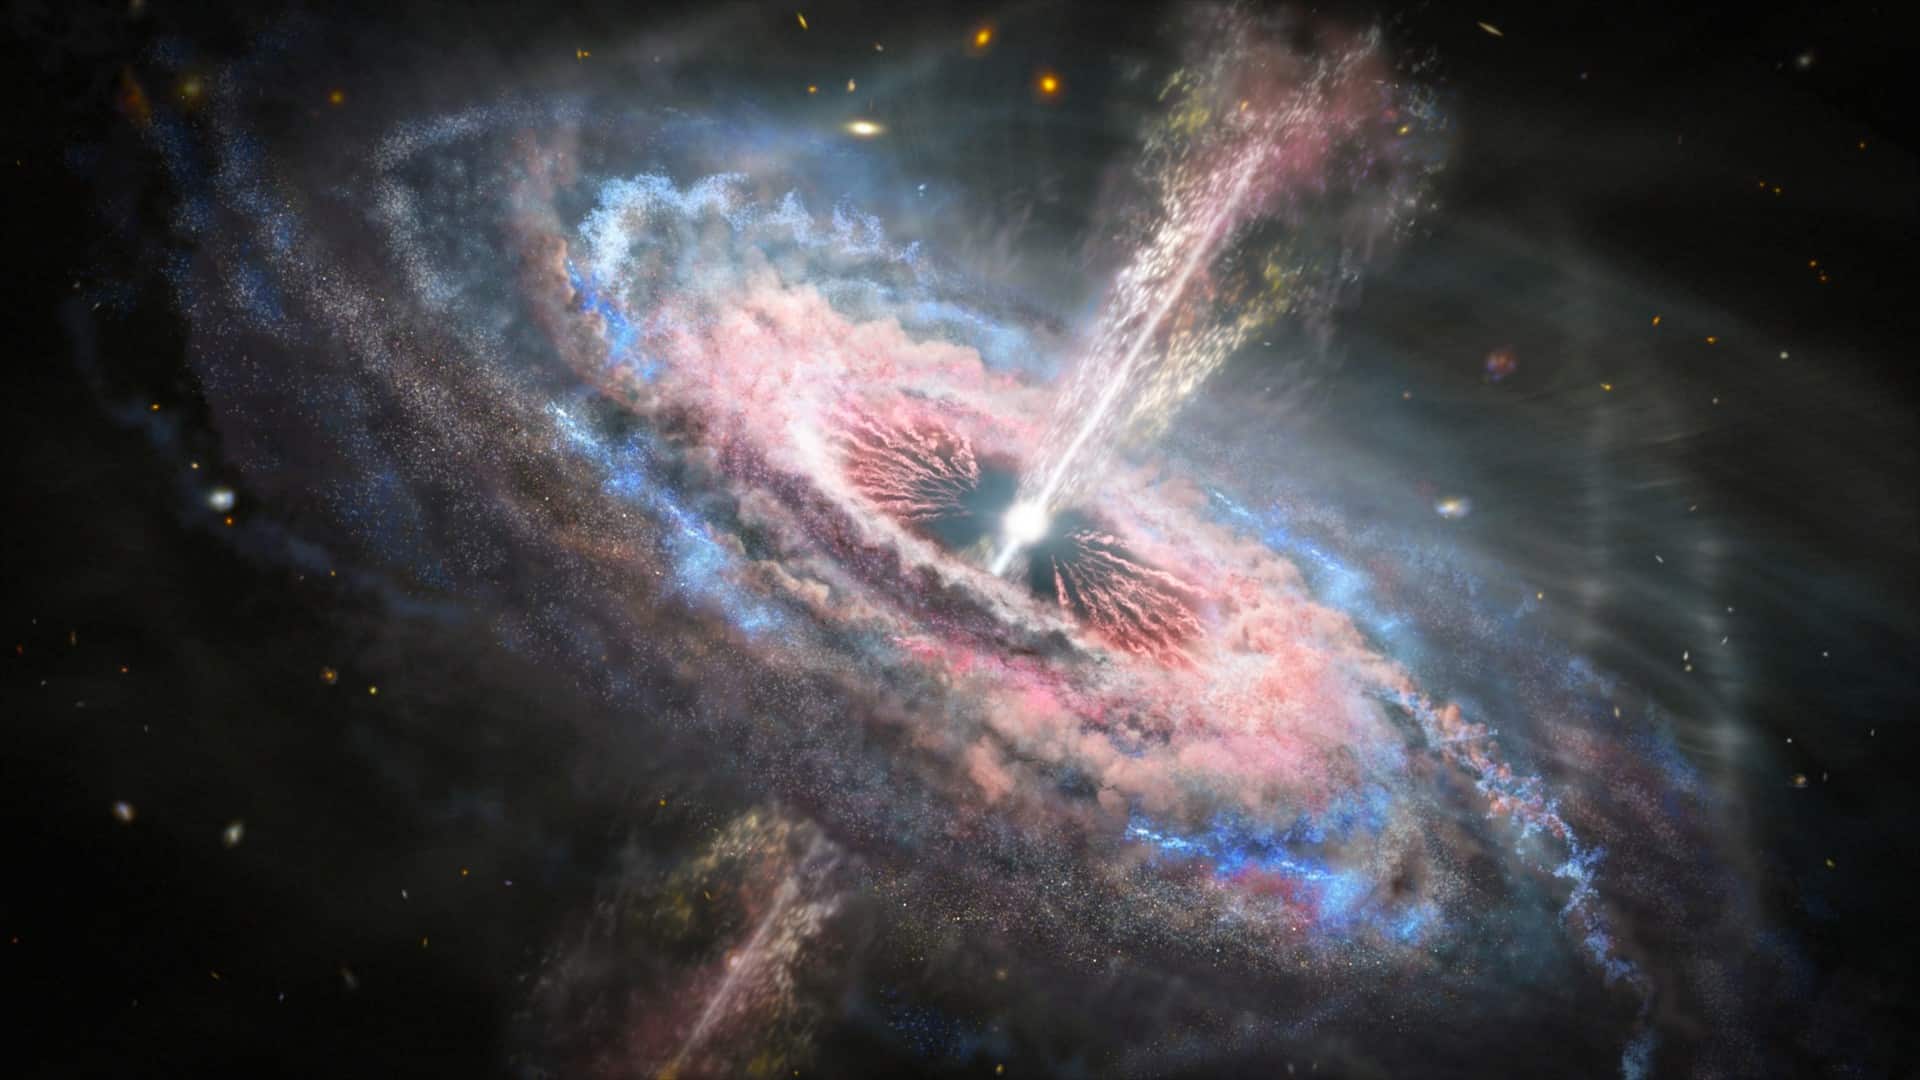 このブラックホールの発見は、銀河の成り立ちを再考させるかもしれない